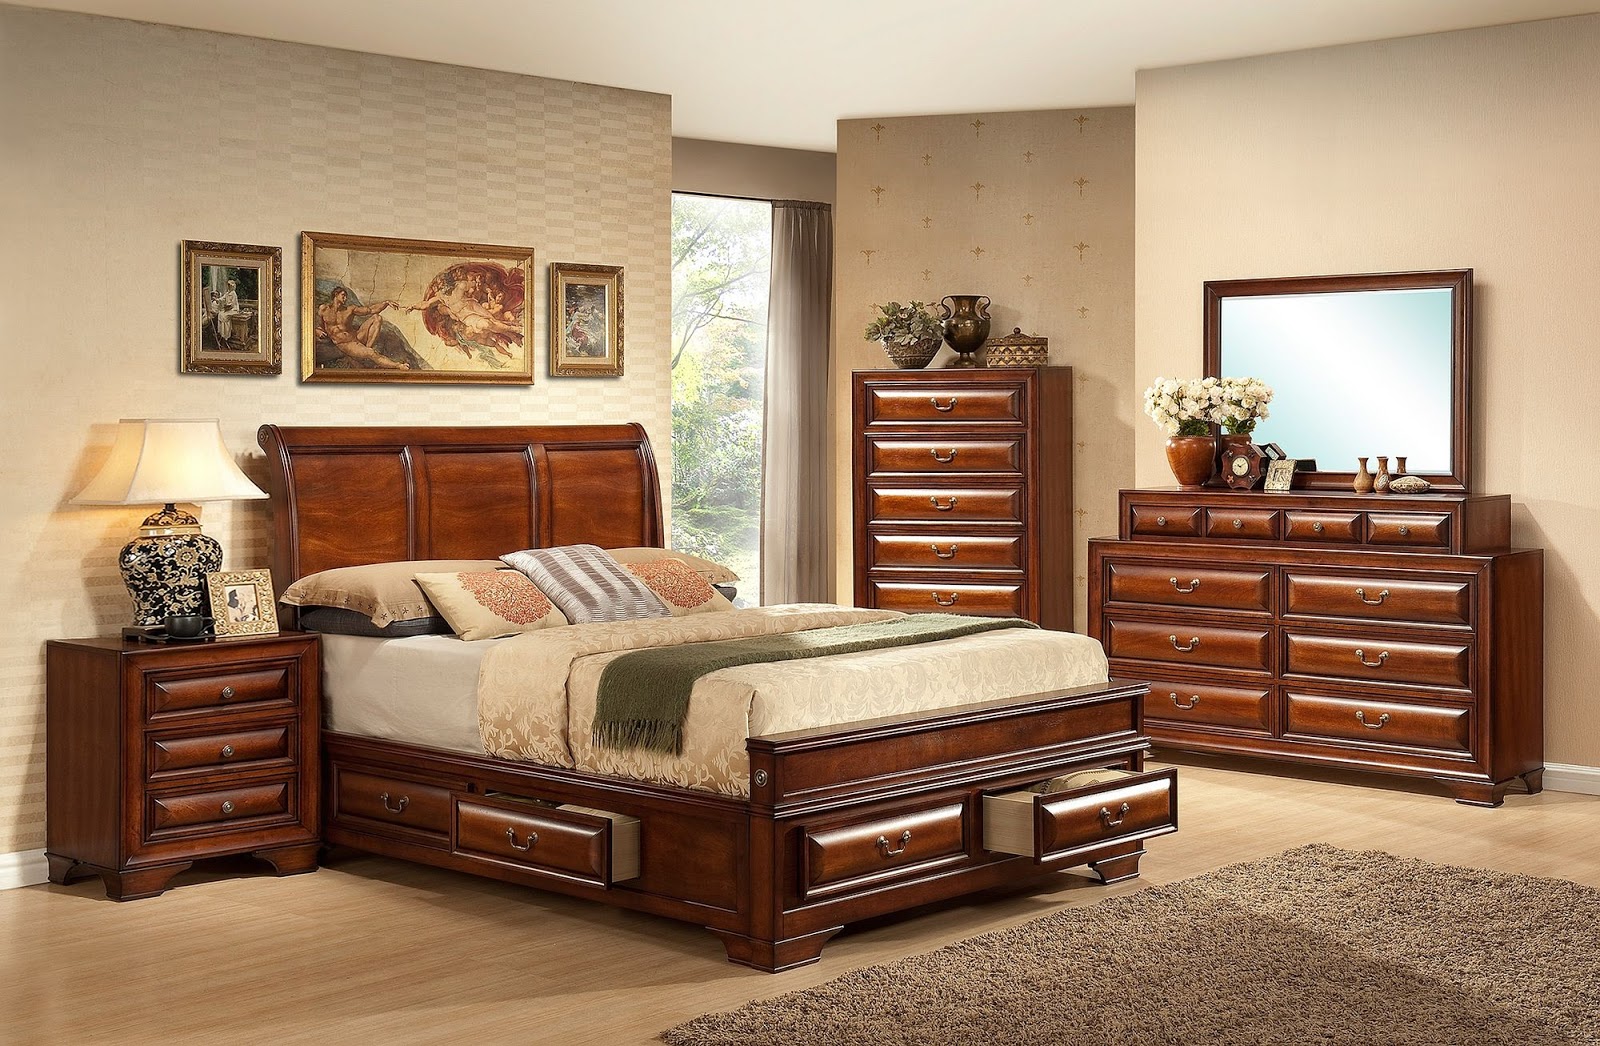 new bedroom furniture trends